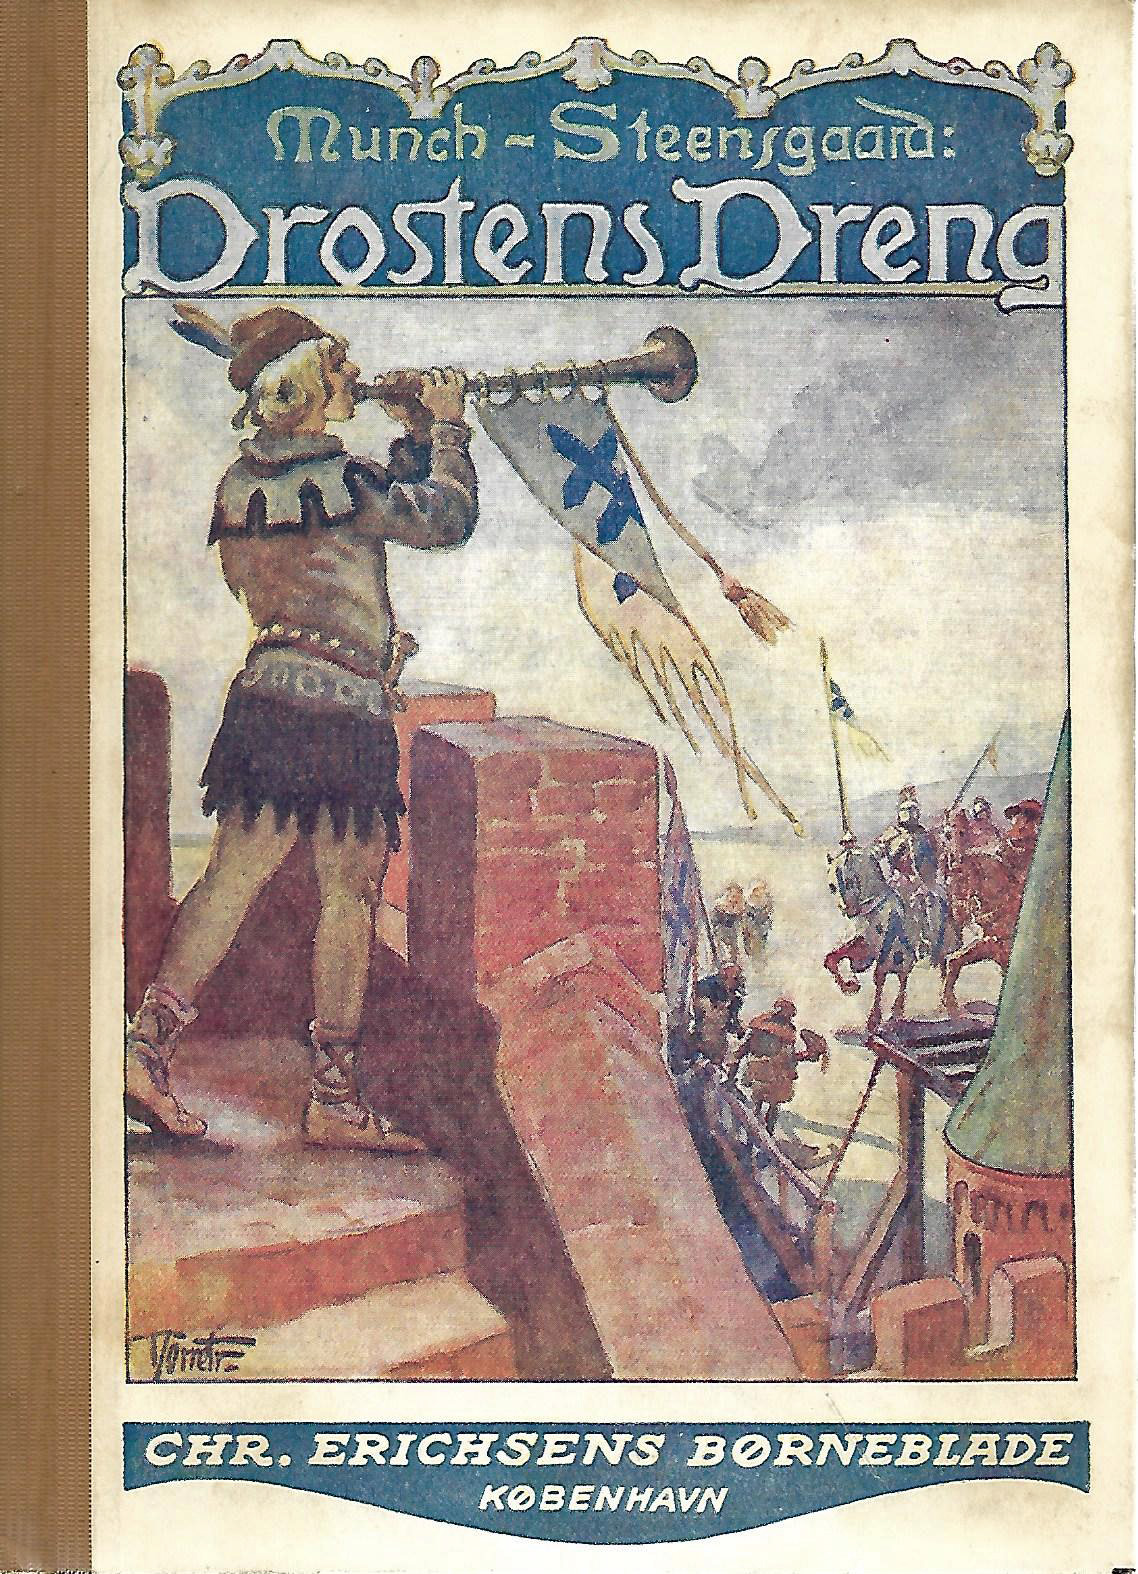 Drostens Dreng - Munch-Steensgaard - 1930